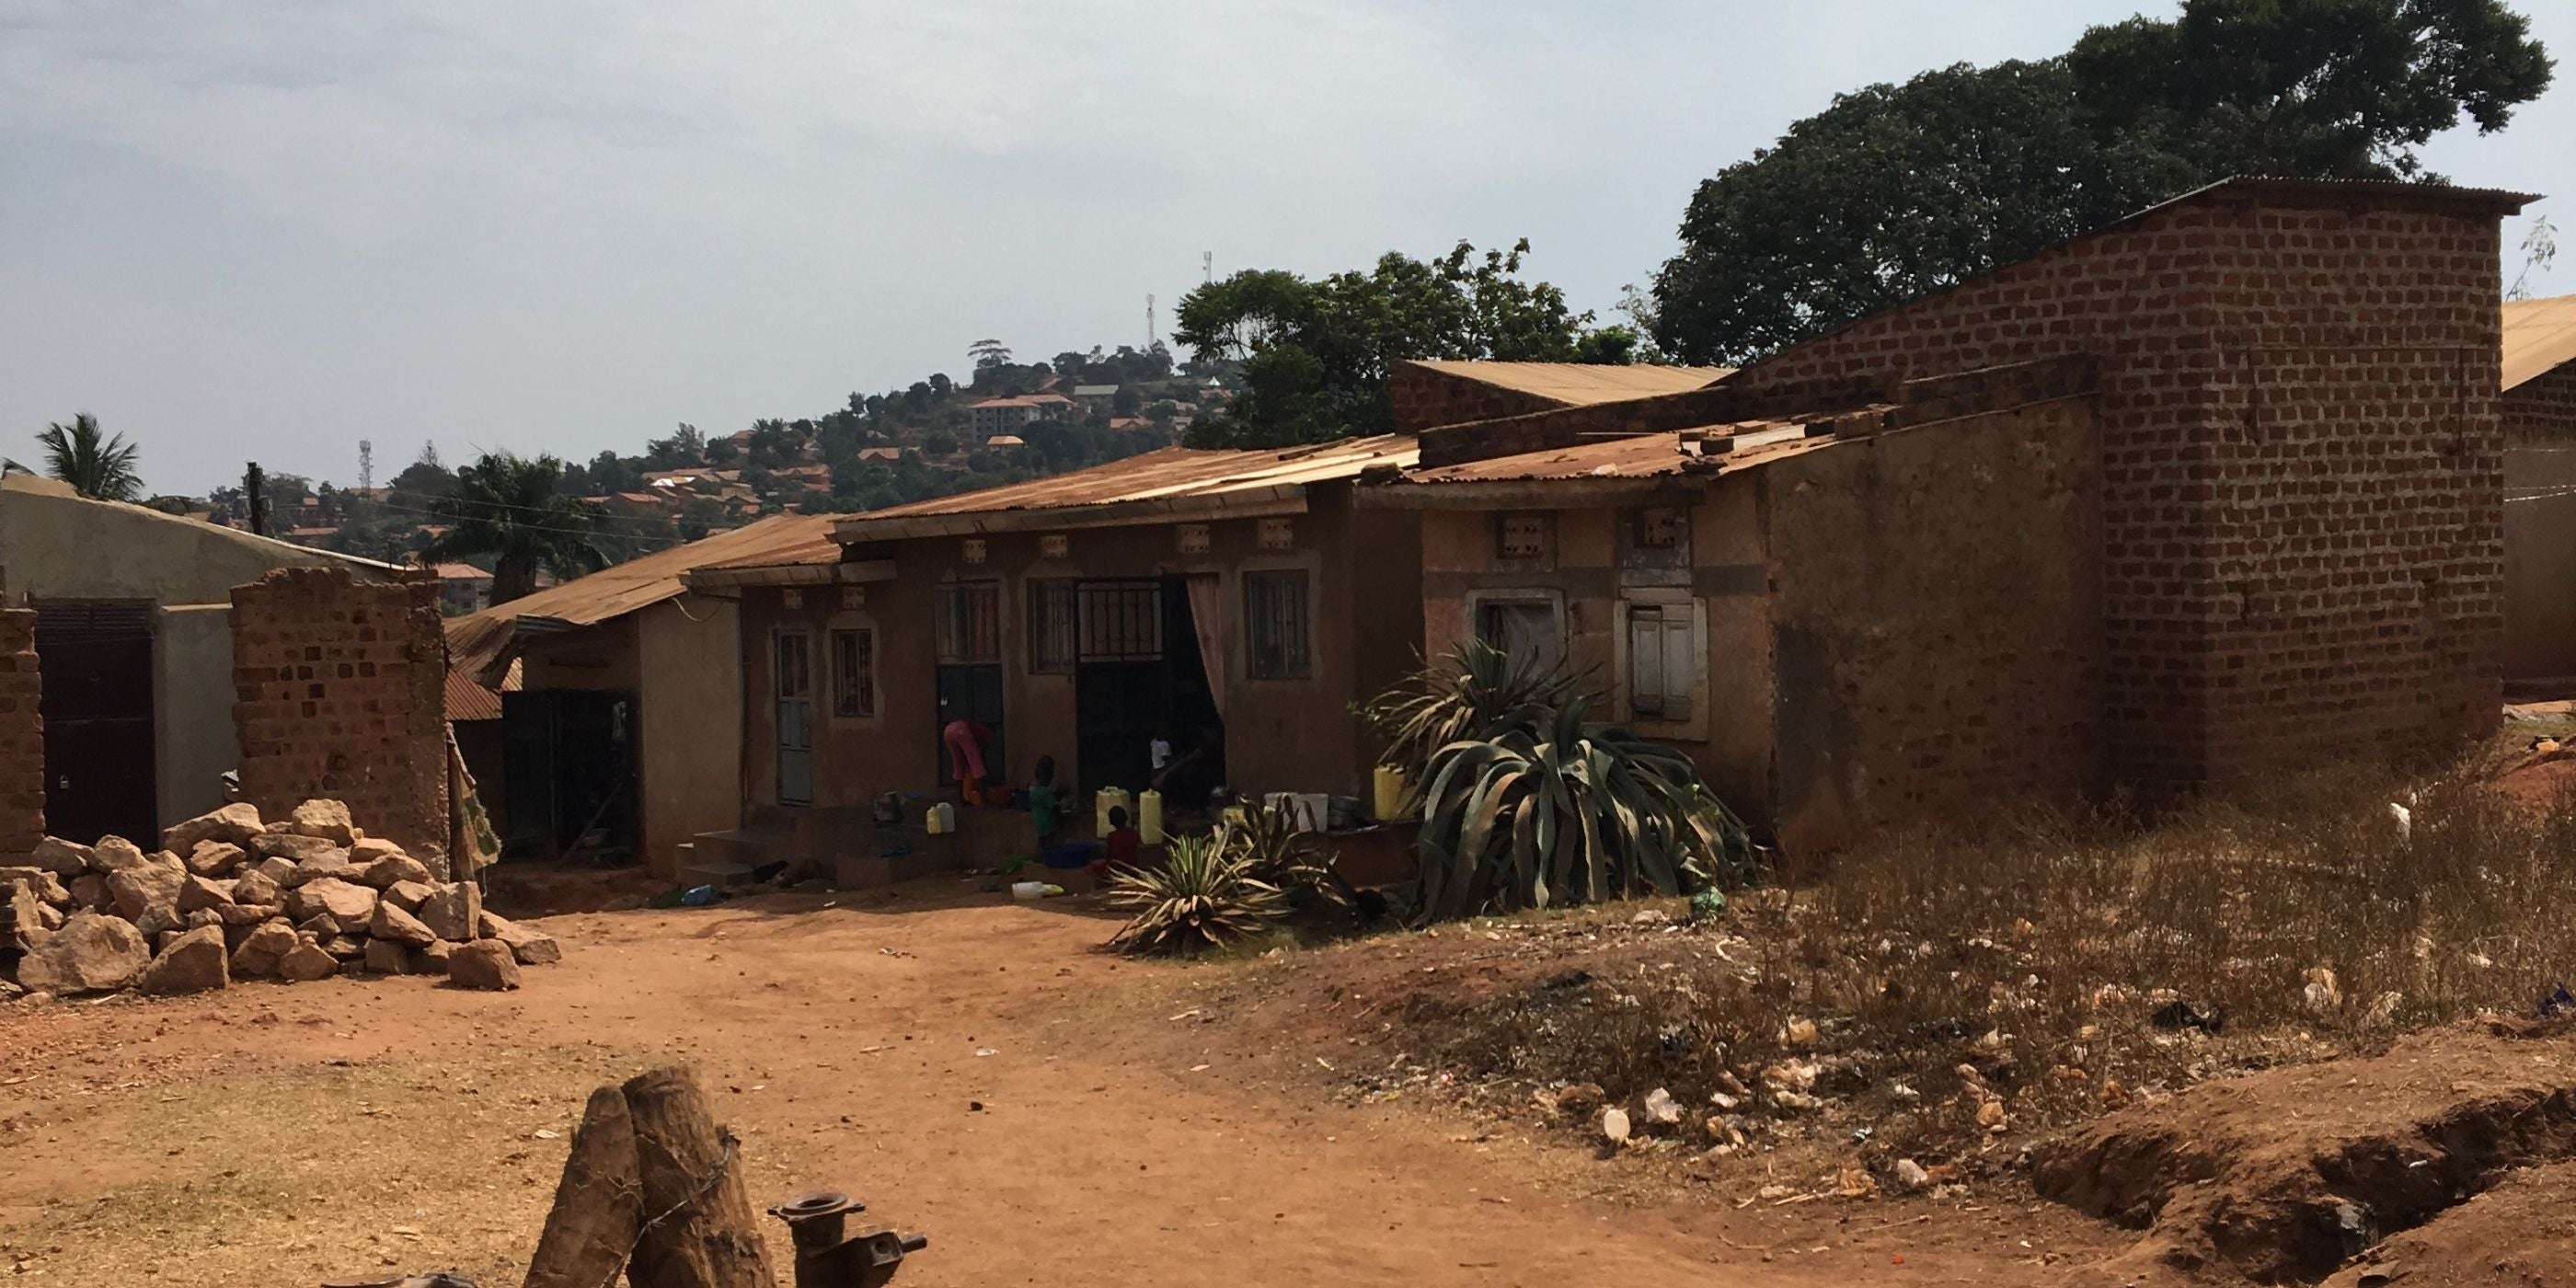 rural community in Uganda